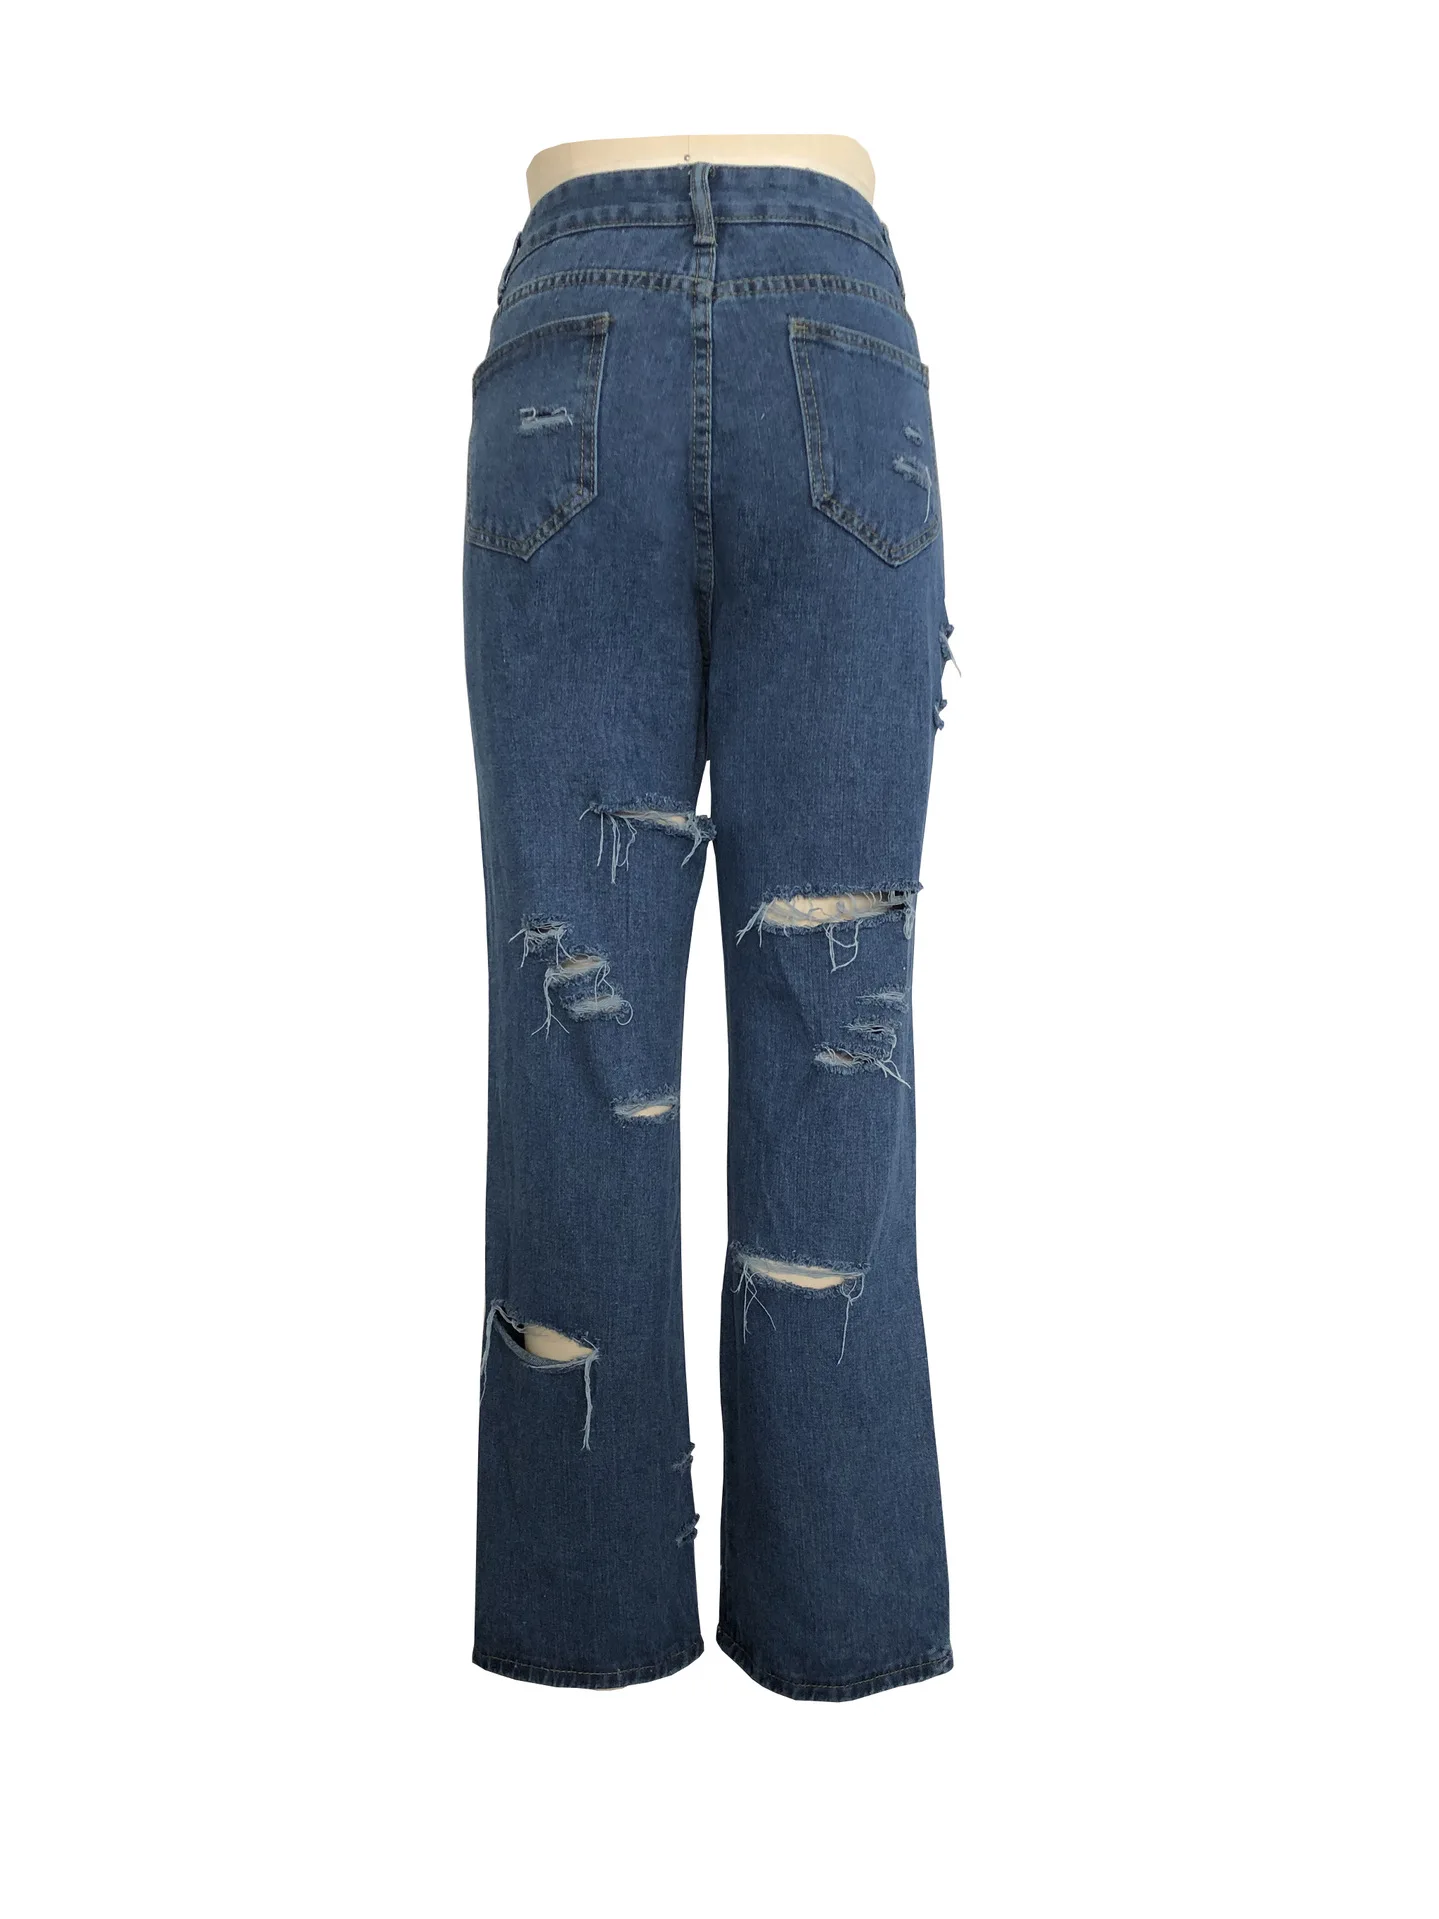 Синие рваные потертые джинсы-бойфренды Женские повседневные Летние Осенние простые прямые брюки с дырками весенние брюки размера плюс